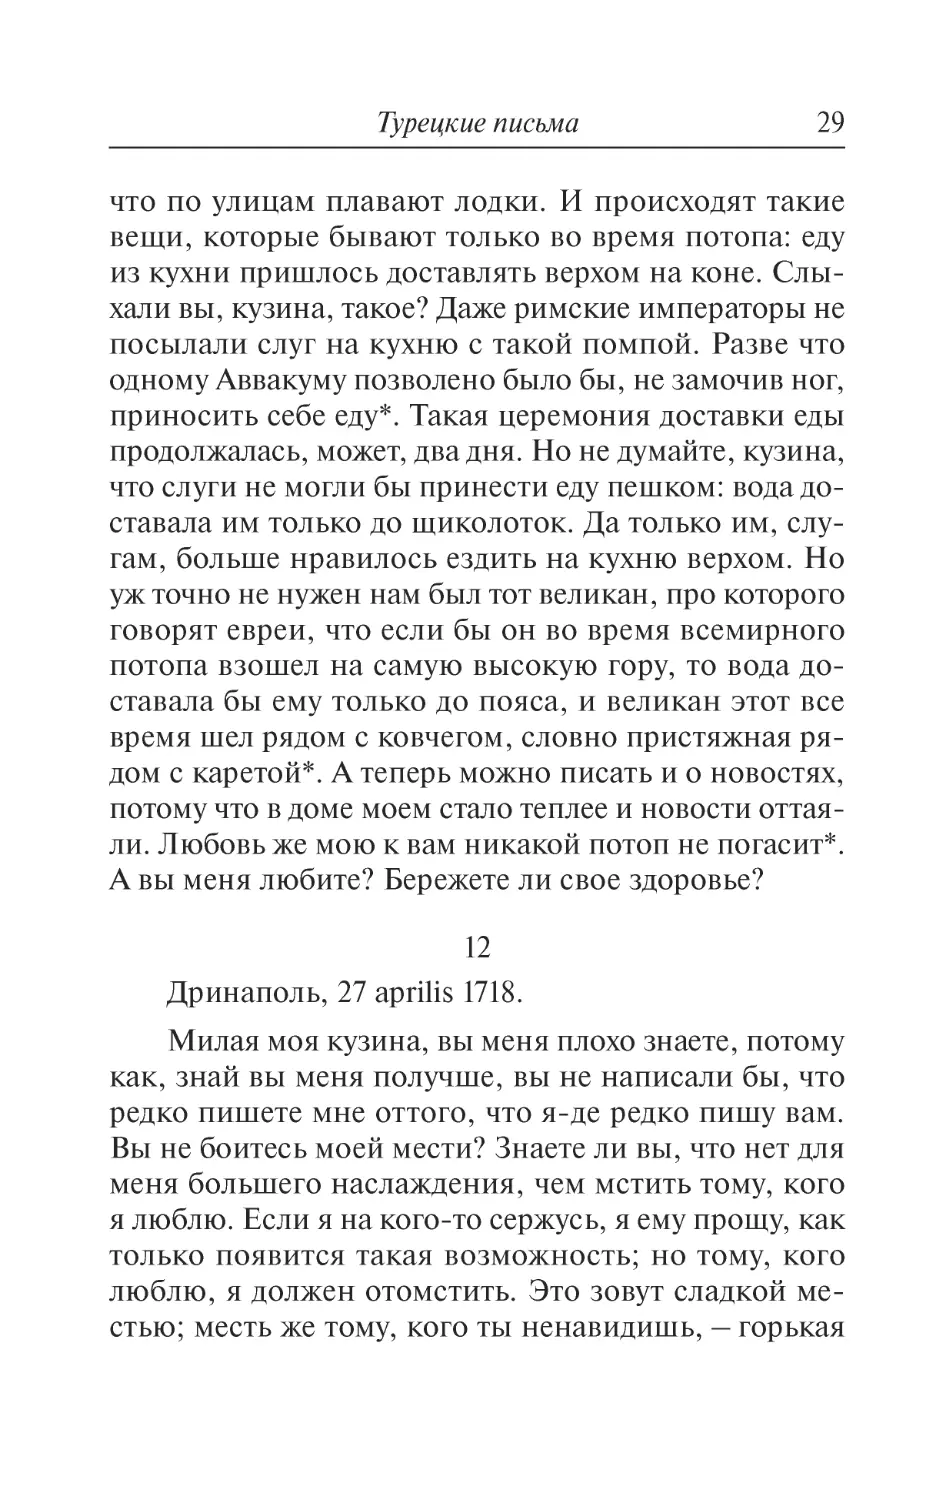 12. Дринаполь, 27 aprilis 1718